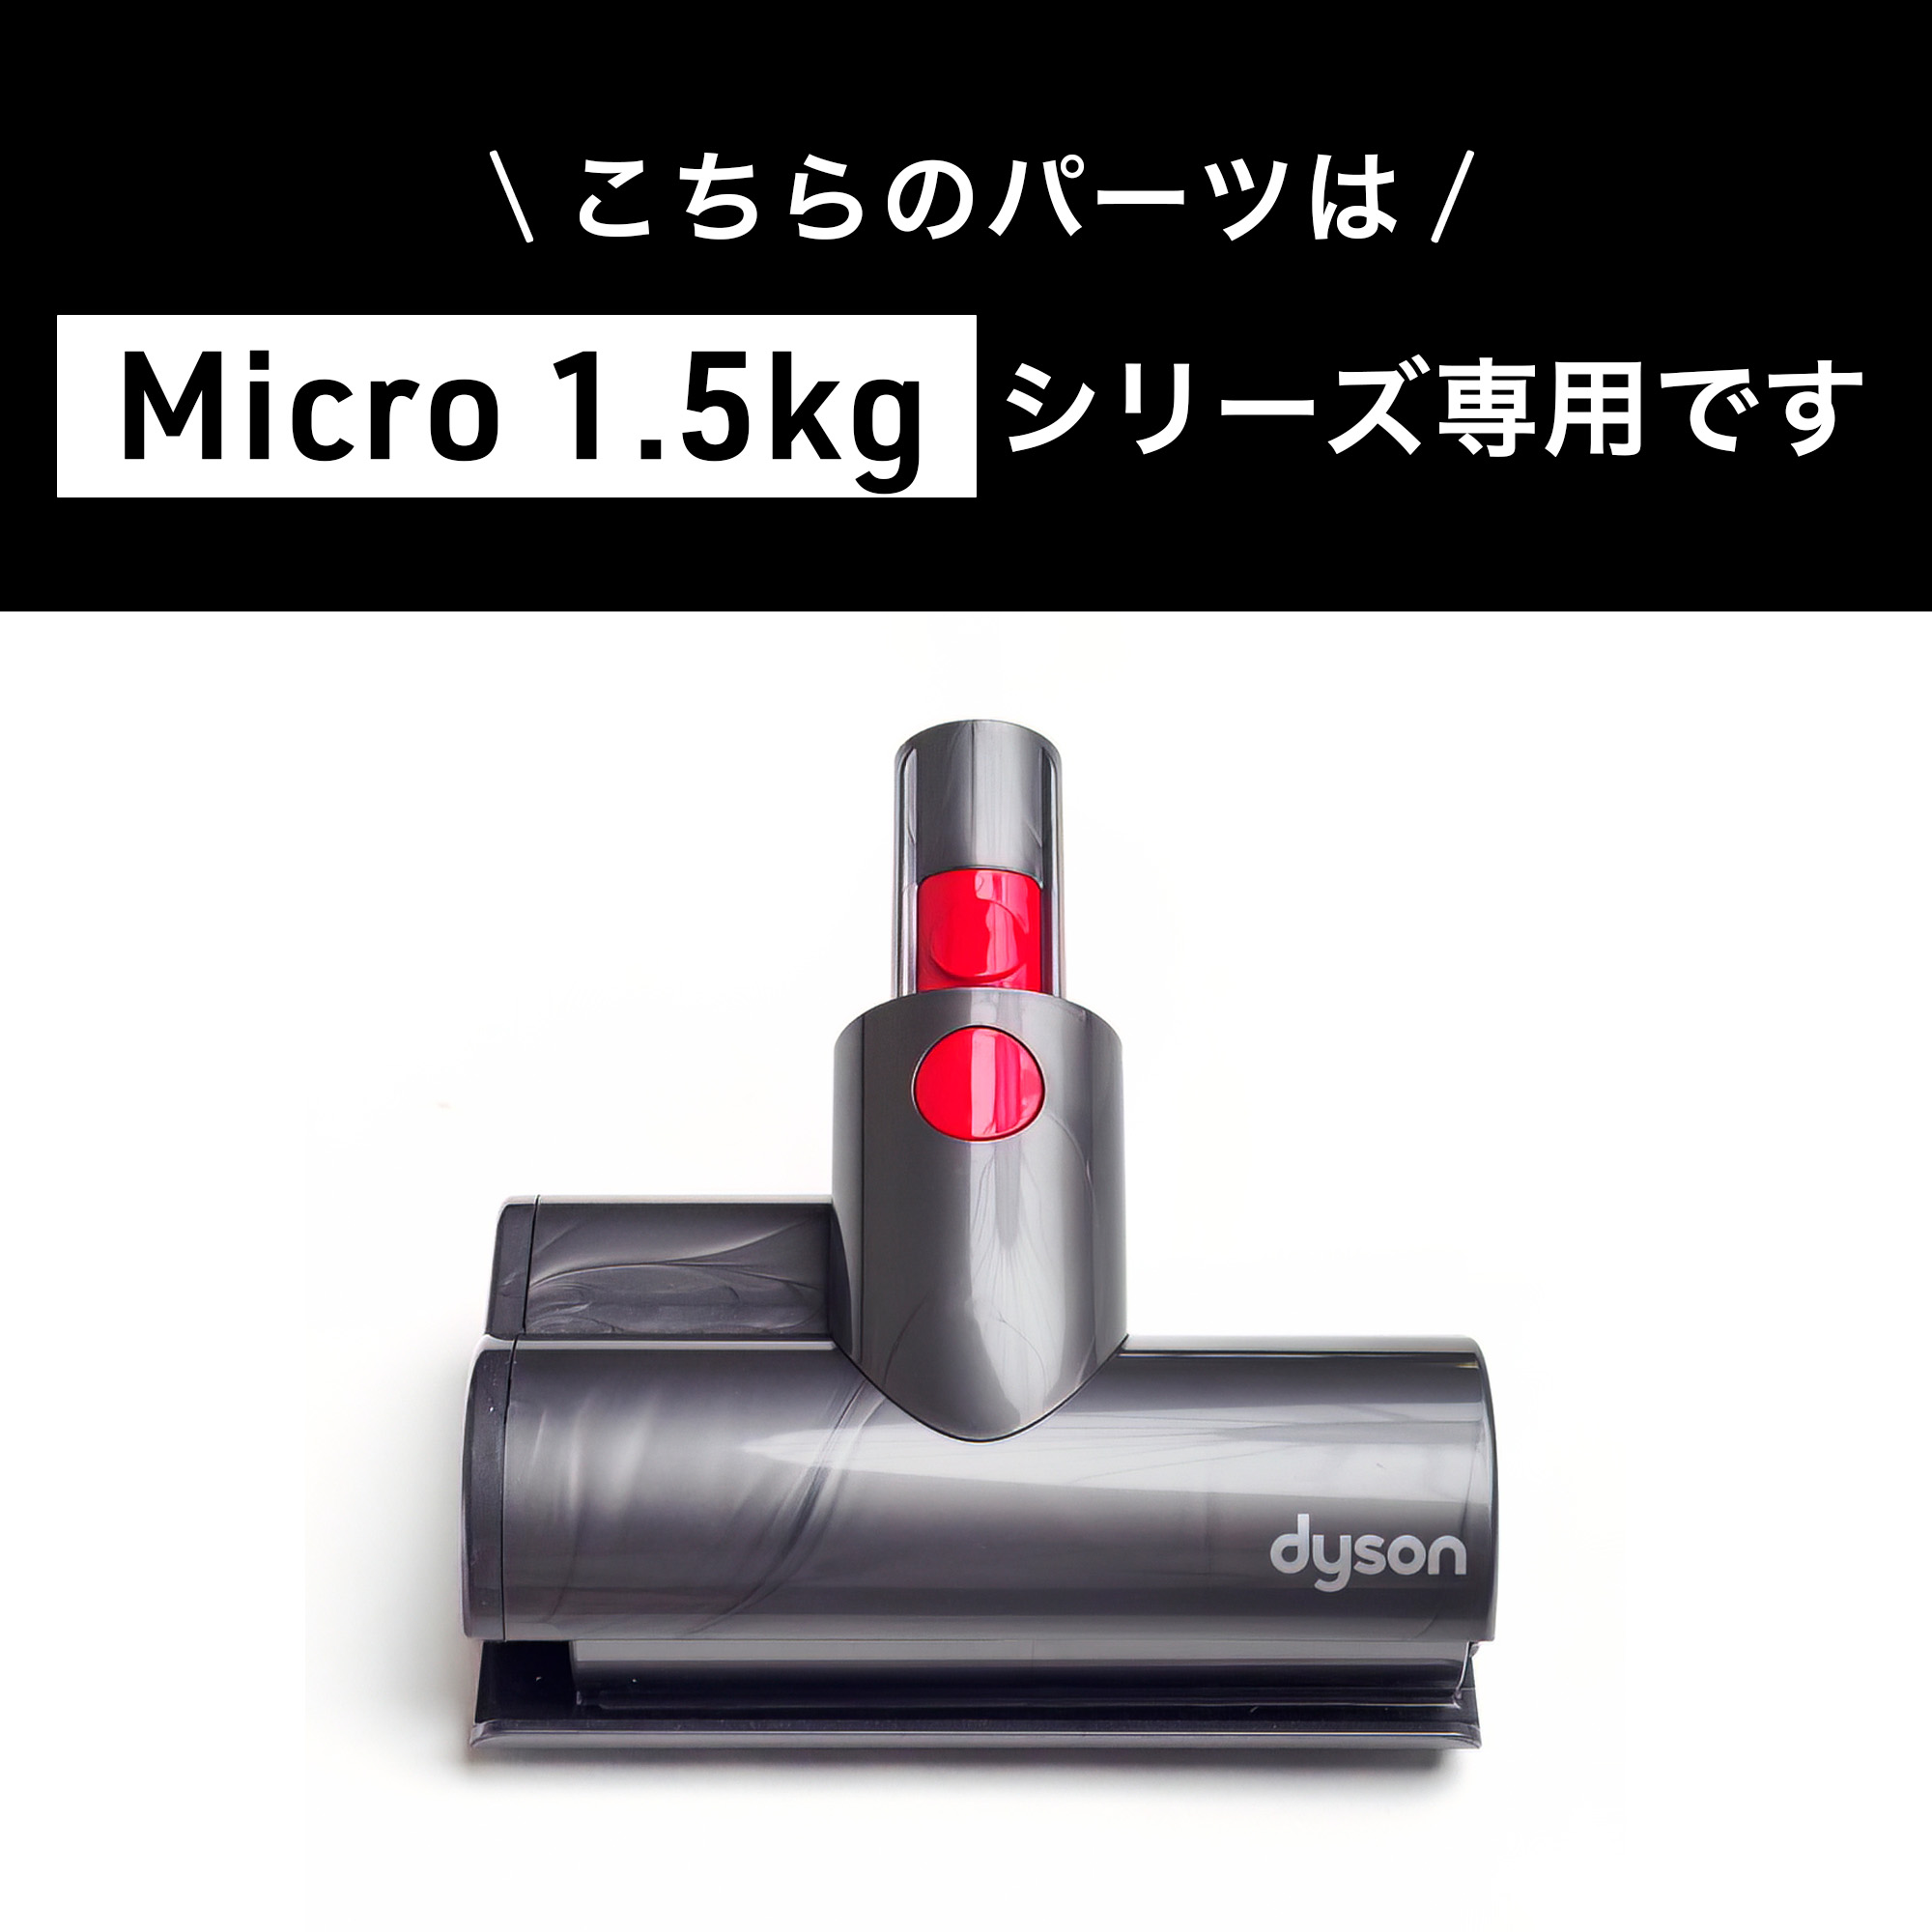 ダイソン dyson micro 1.5kg SV21 純正 ミニモーターヘッド-